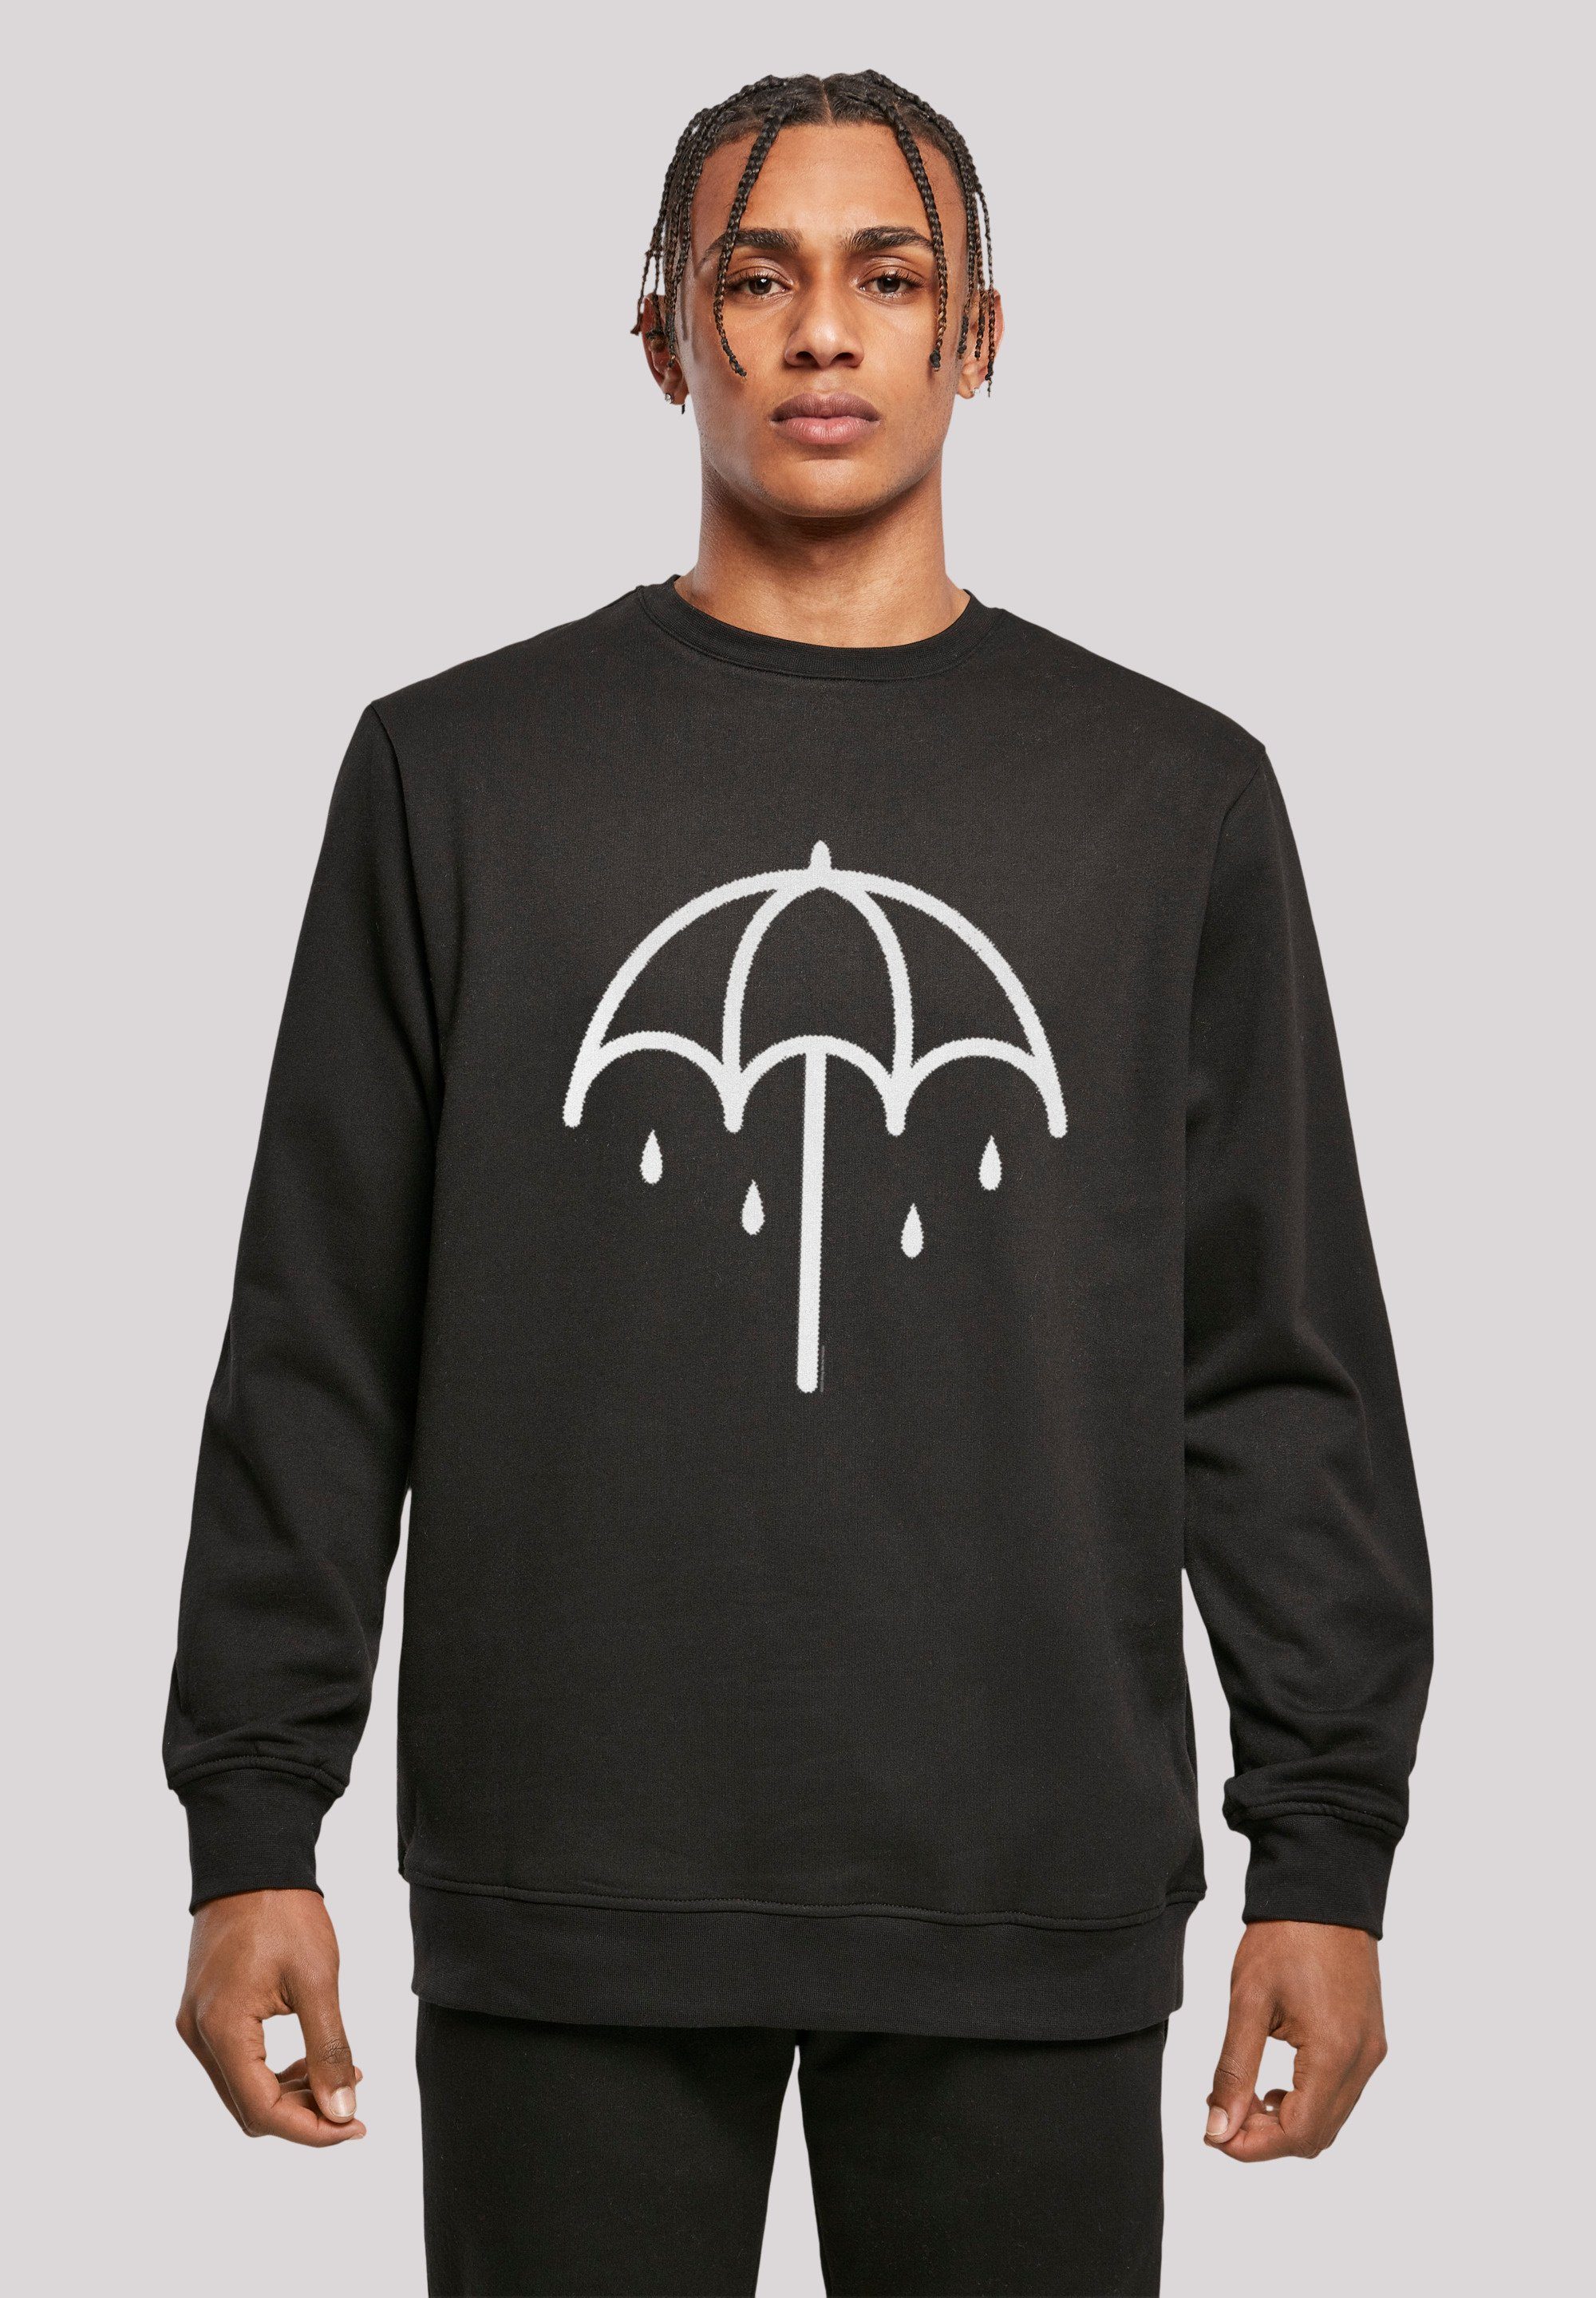 F4NT4STIC Sweatshirt BMTH Metal Band Umbrella 2 DARK Premium Qualität, Rock-Musik, Band